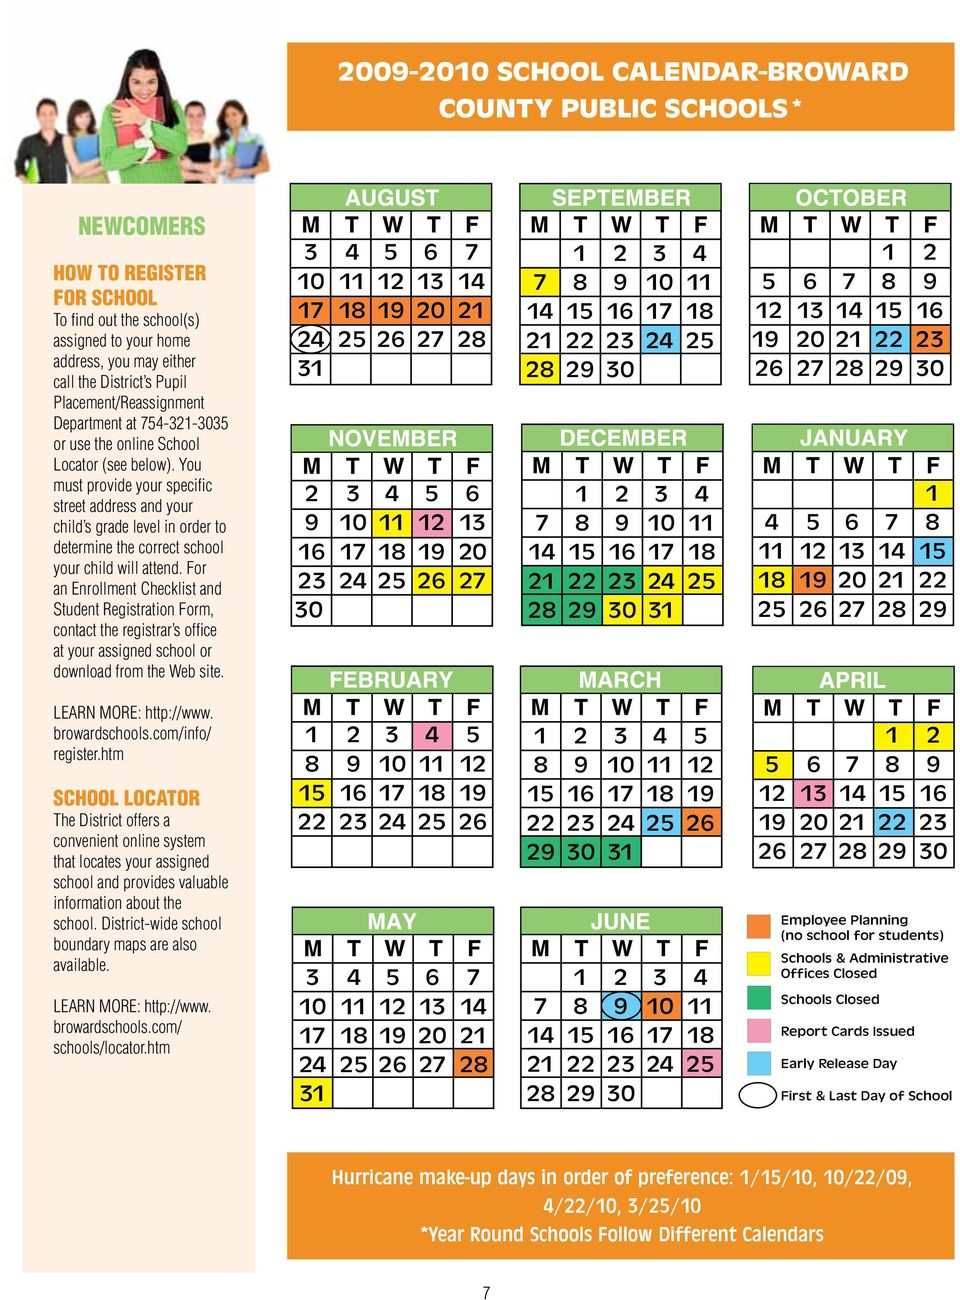 Broward County Schools Calendar 2009-2010 Pdf